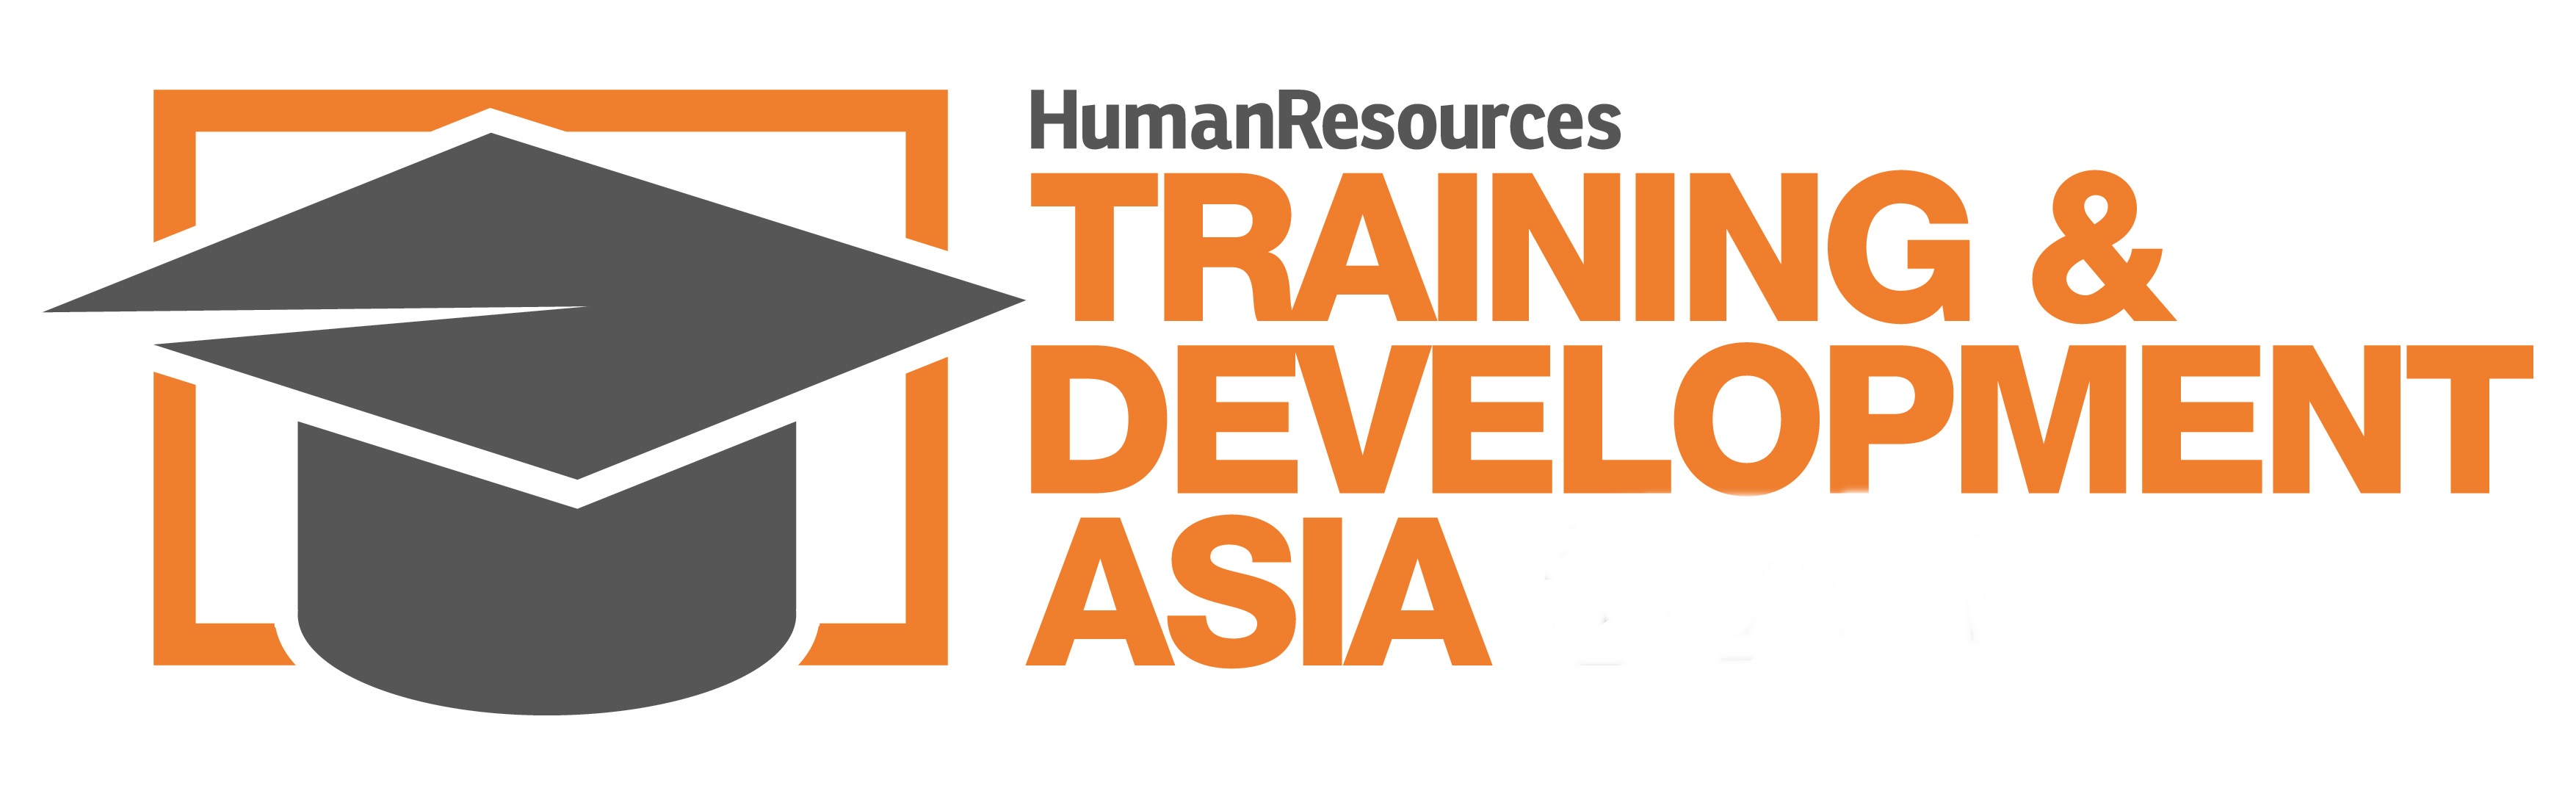 Training Development logo. Training development